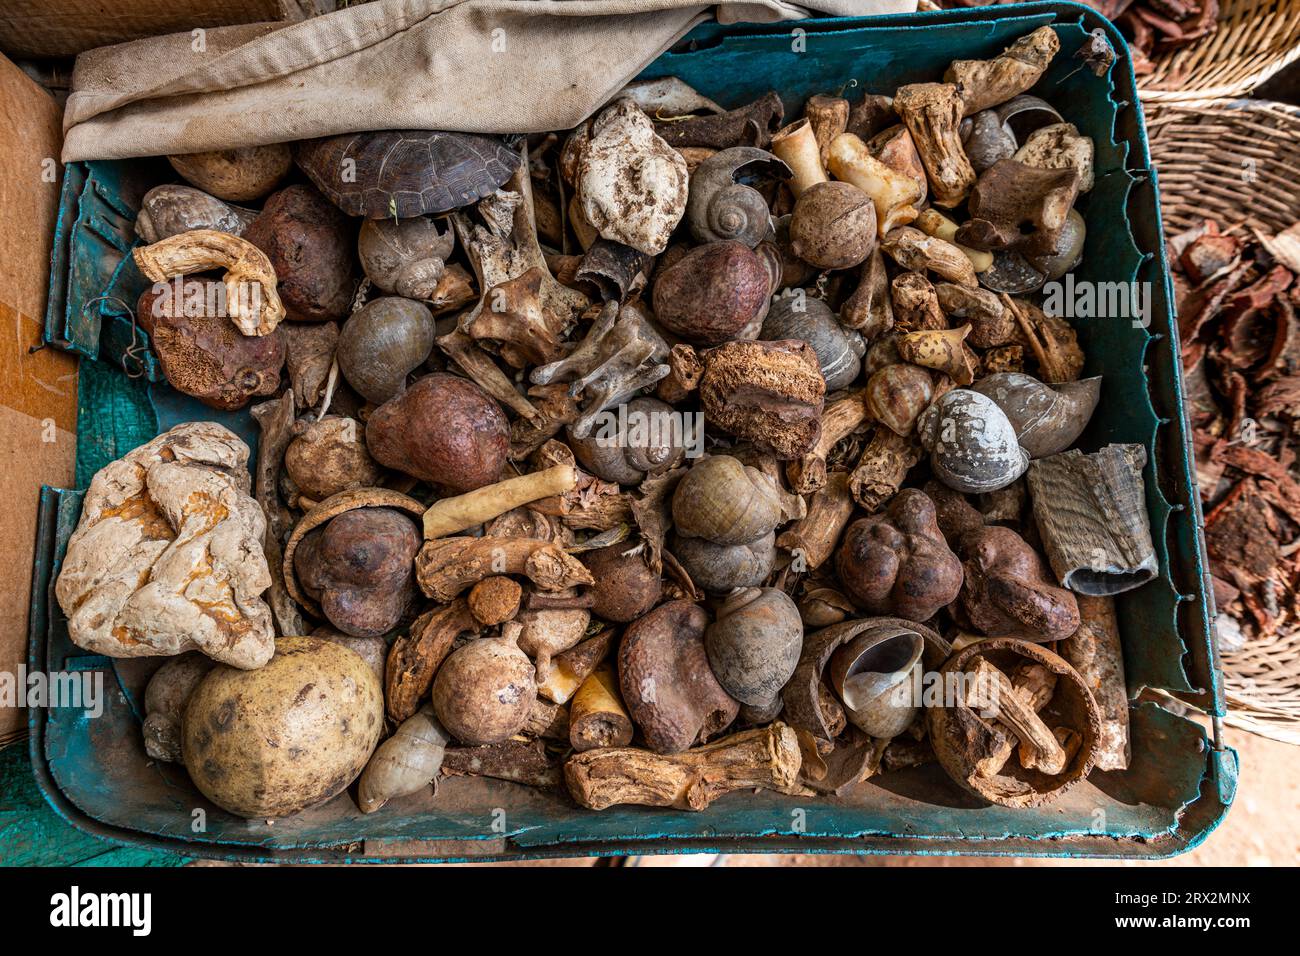 Radici e foglie locali, mercato della medicina tradizionale, Garoua, Camerun settentrionale, Africa Foto Stock